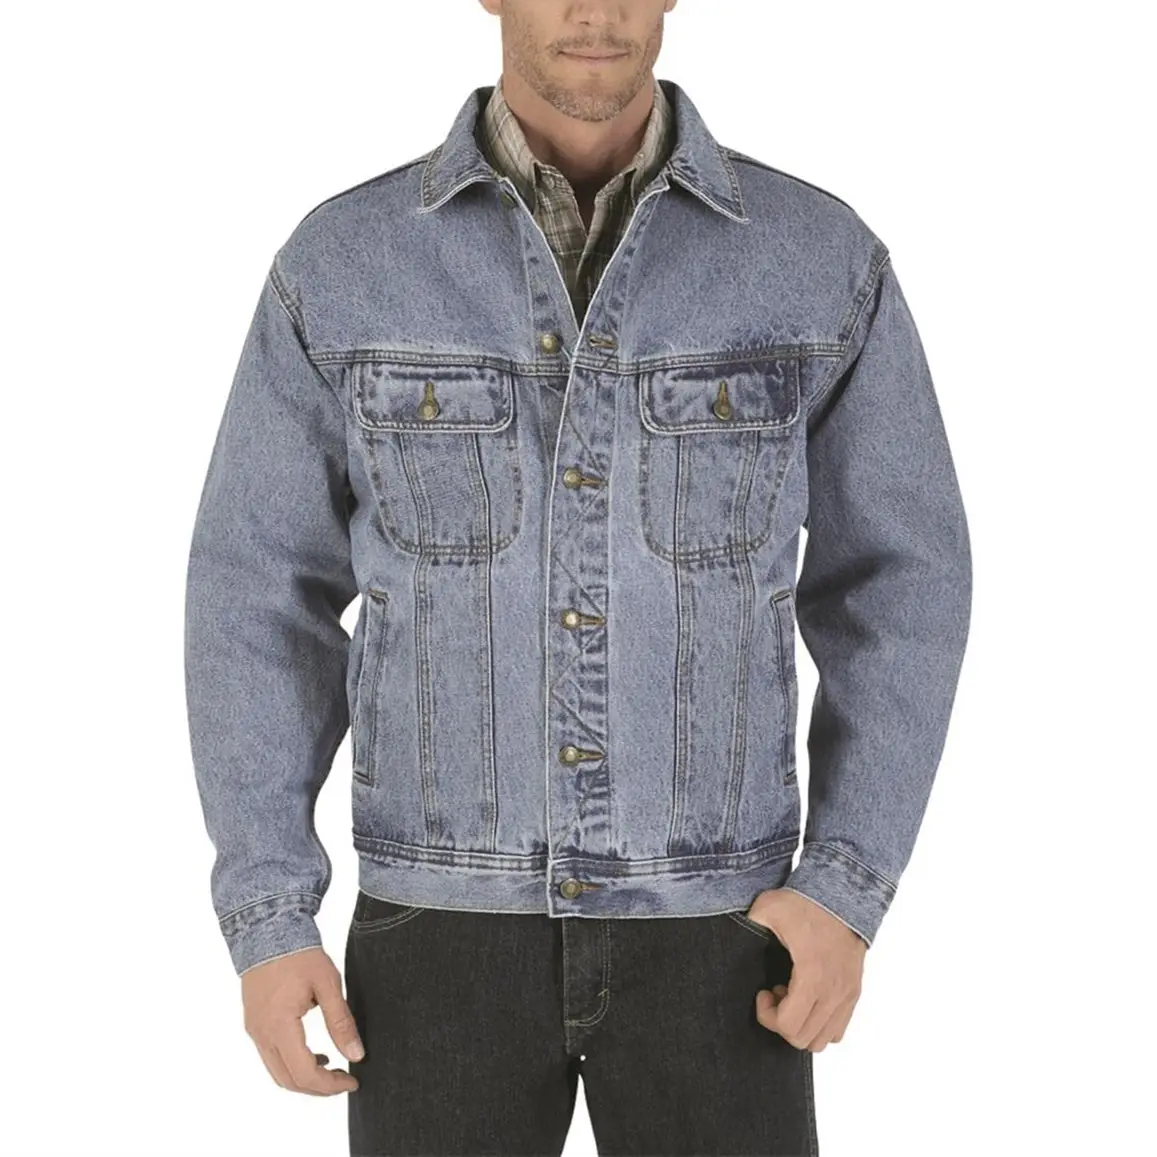 Men's denim jacket Rugged Wear Unlined Denim Jacket